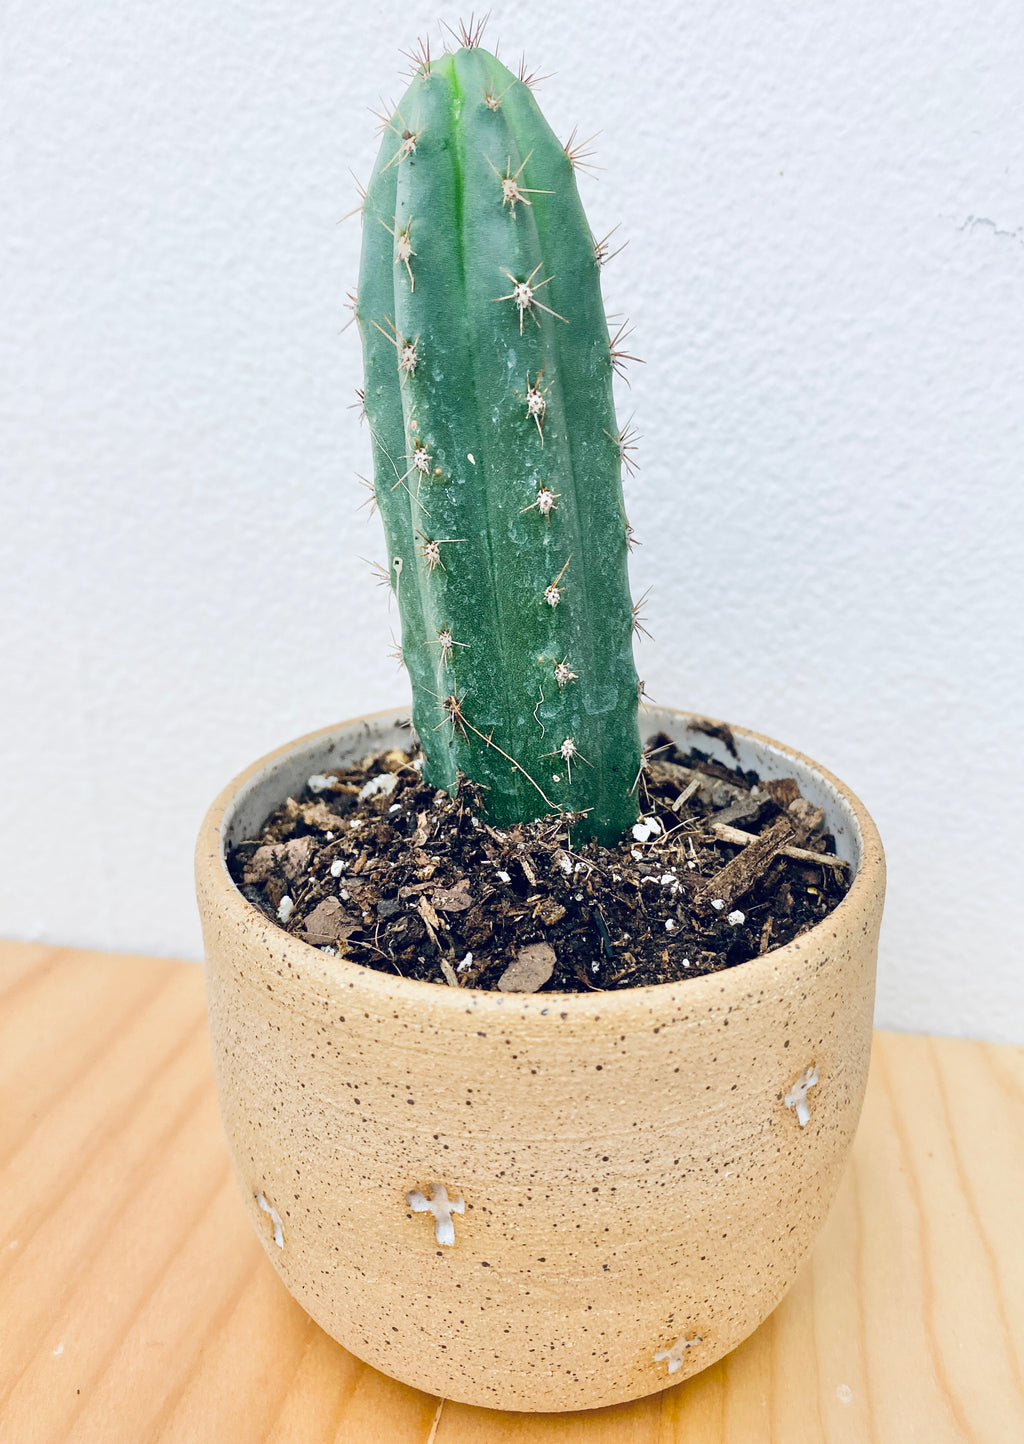 Speckled Santa Fe Cactus Tumbler With Cactus